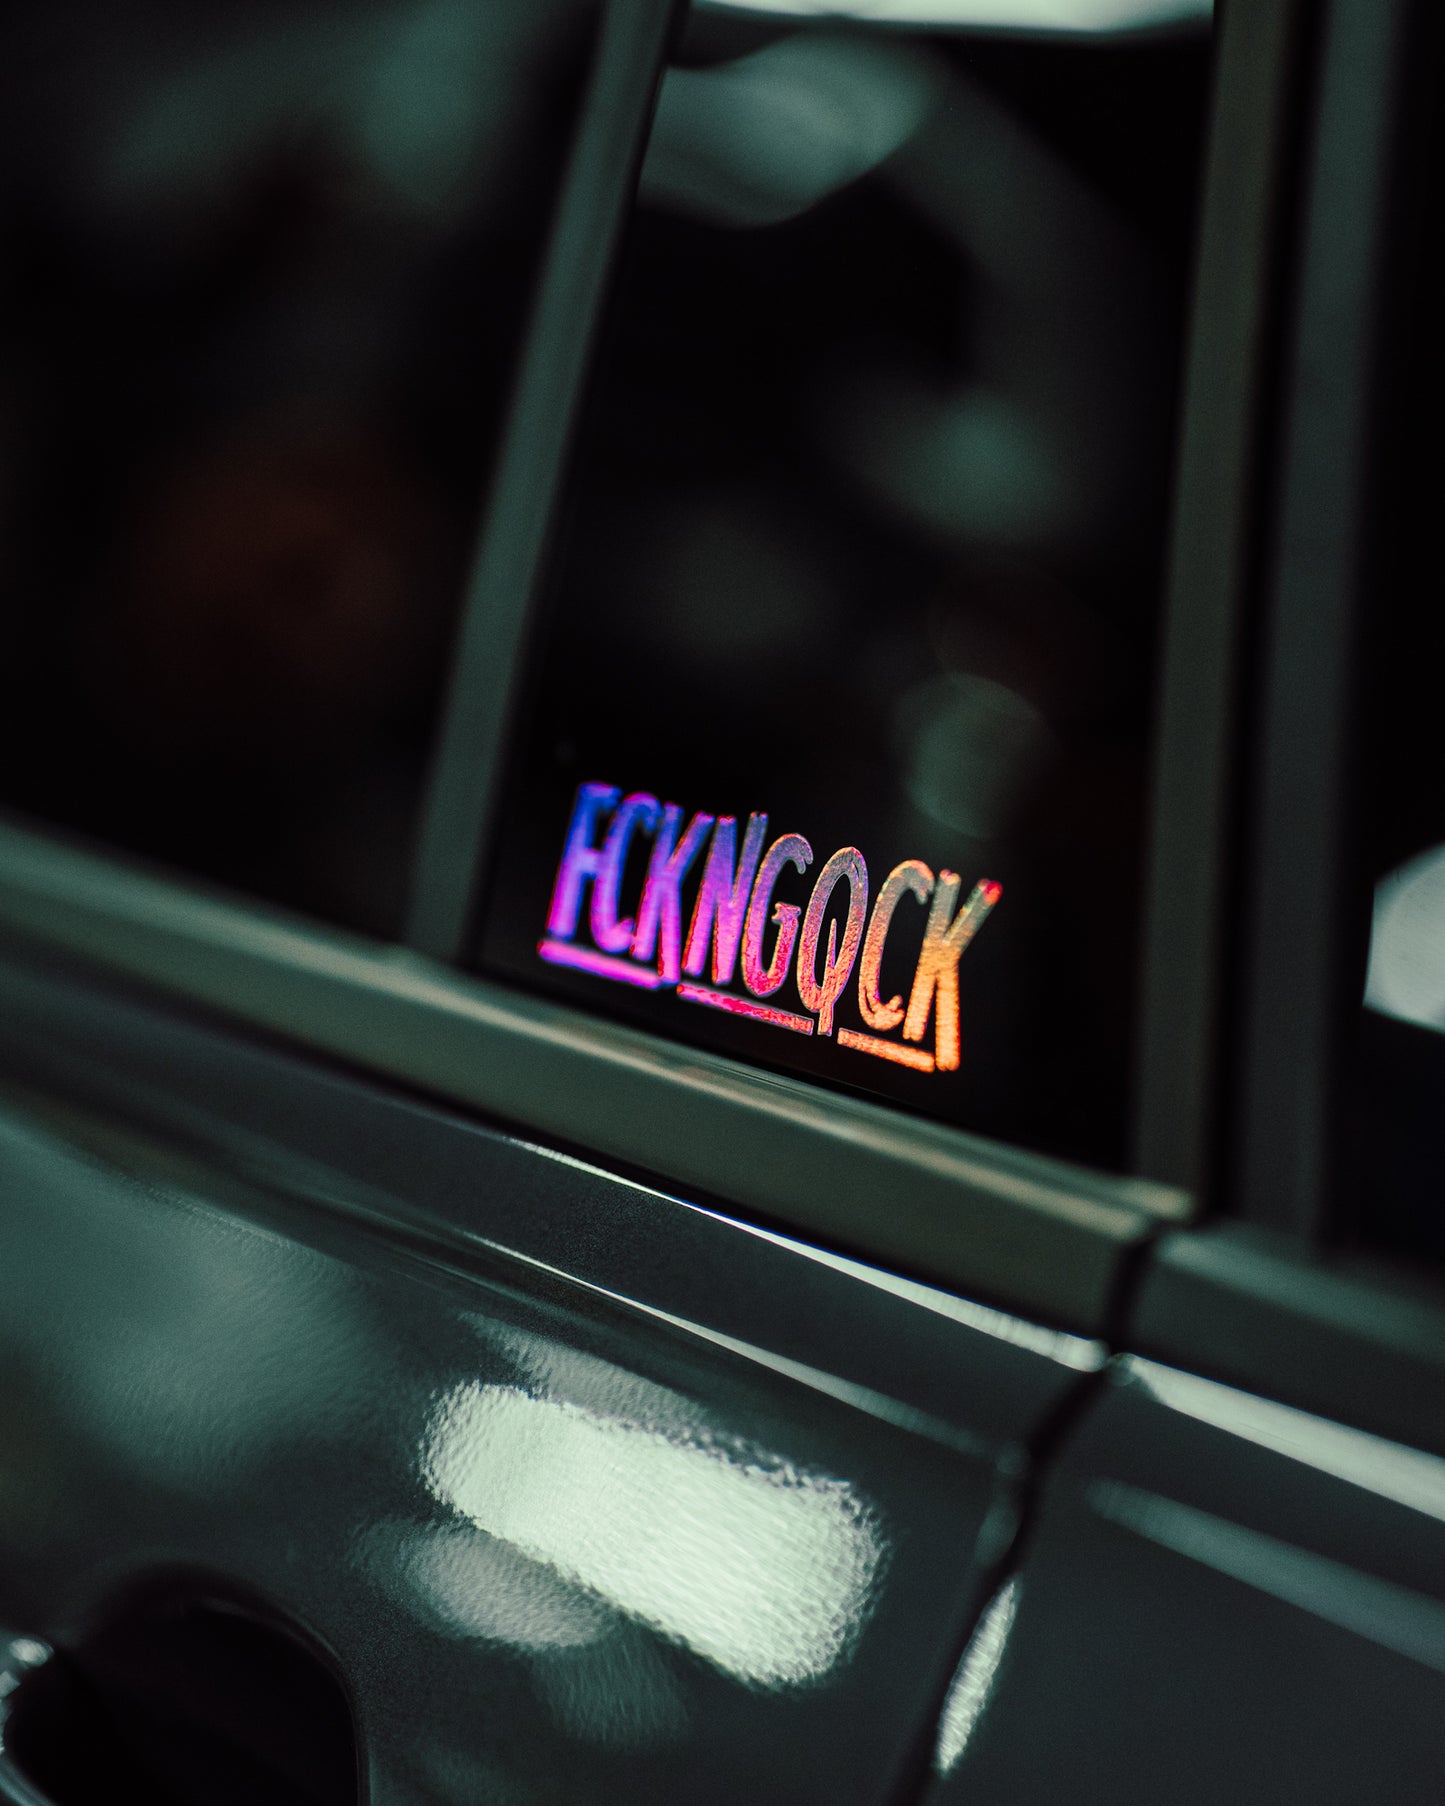 "FCKNGQCK" Sticker